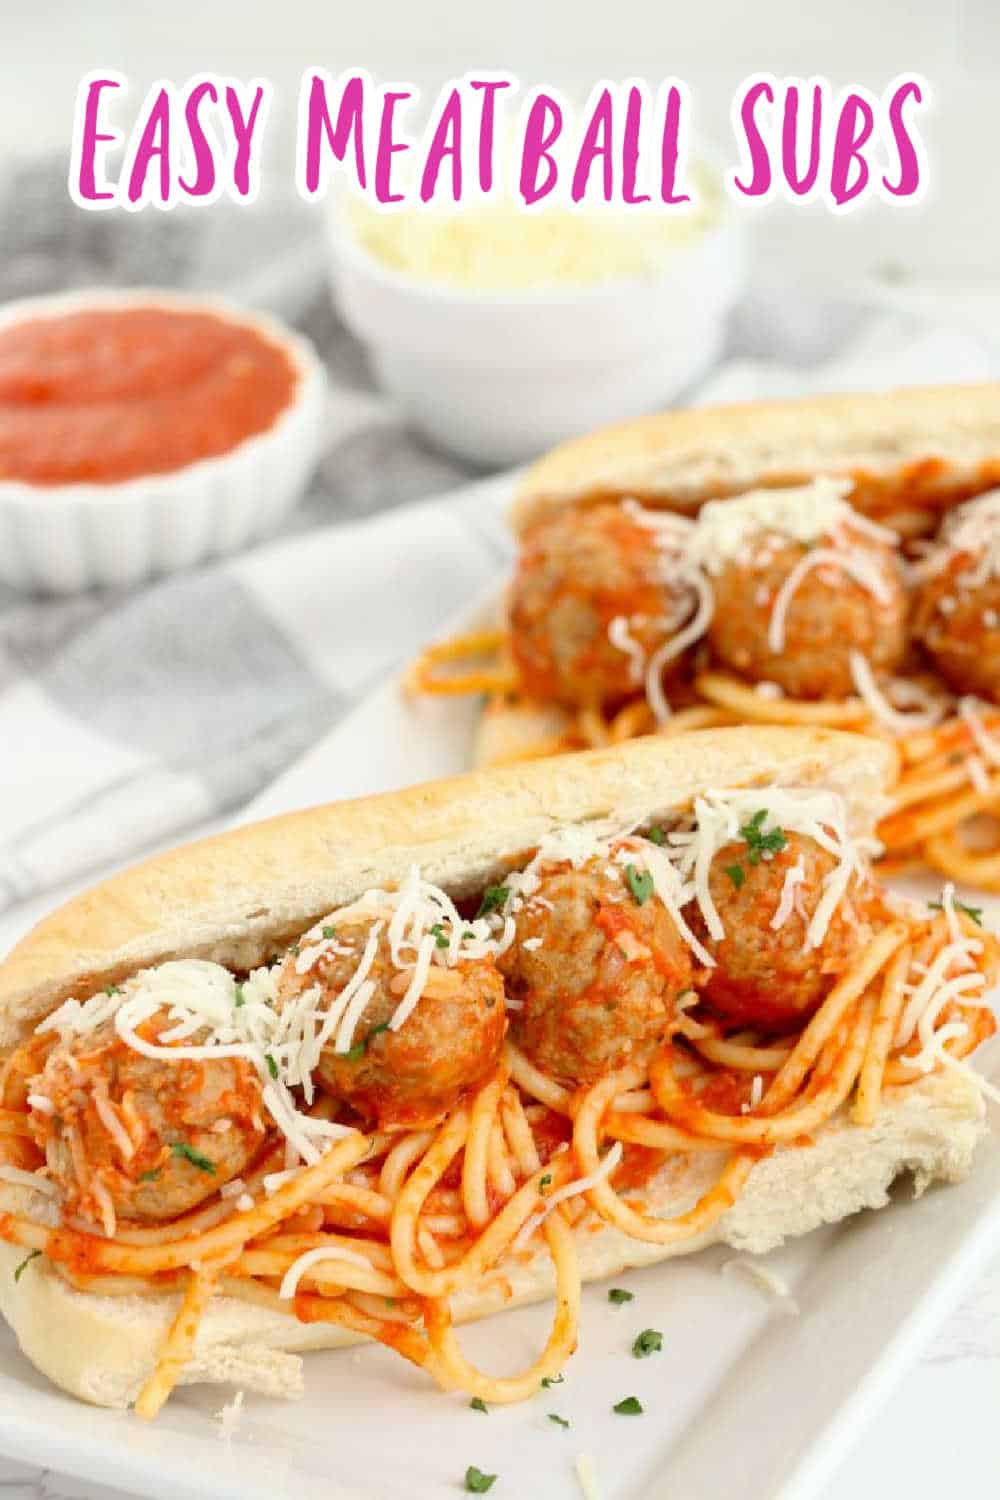 Spaghetti and meatball sub